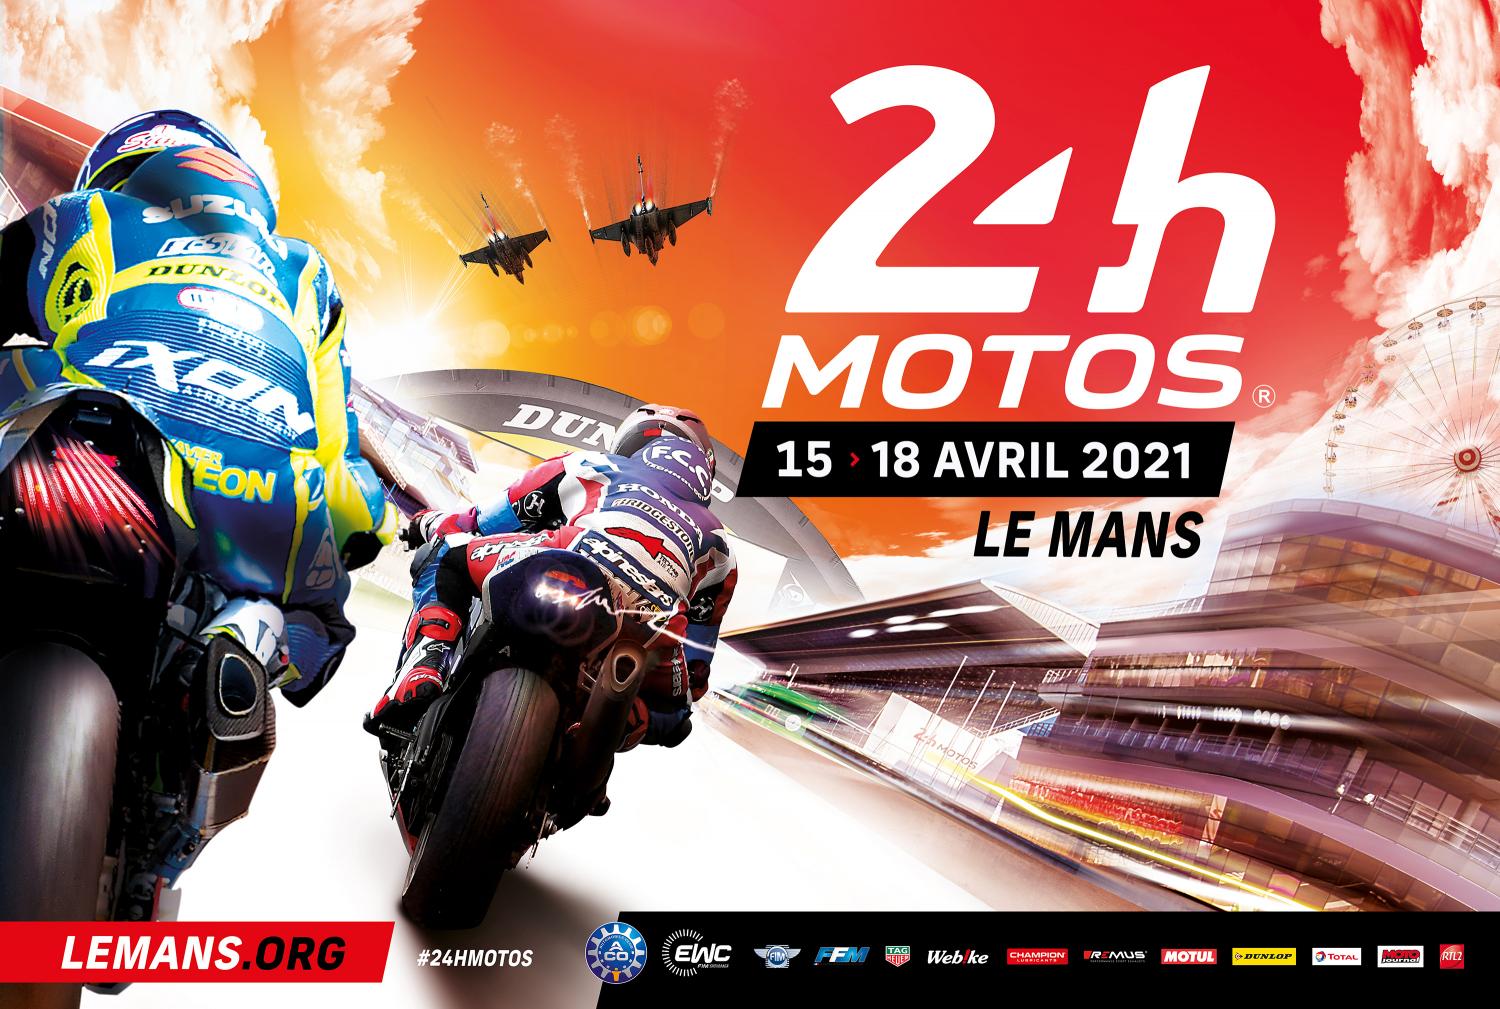 24 Heures Motos 2021 - Une affiche vibrante comme une machine lancée